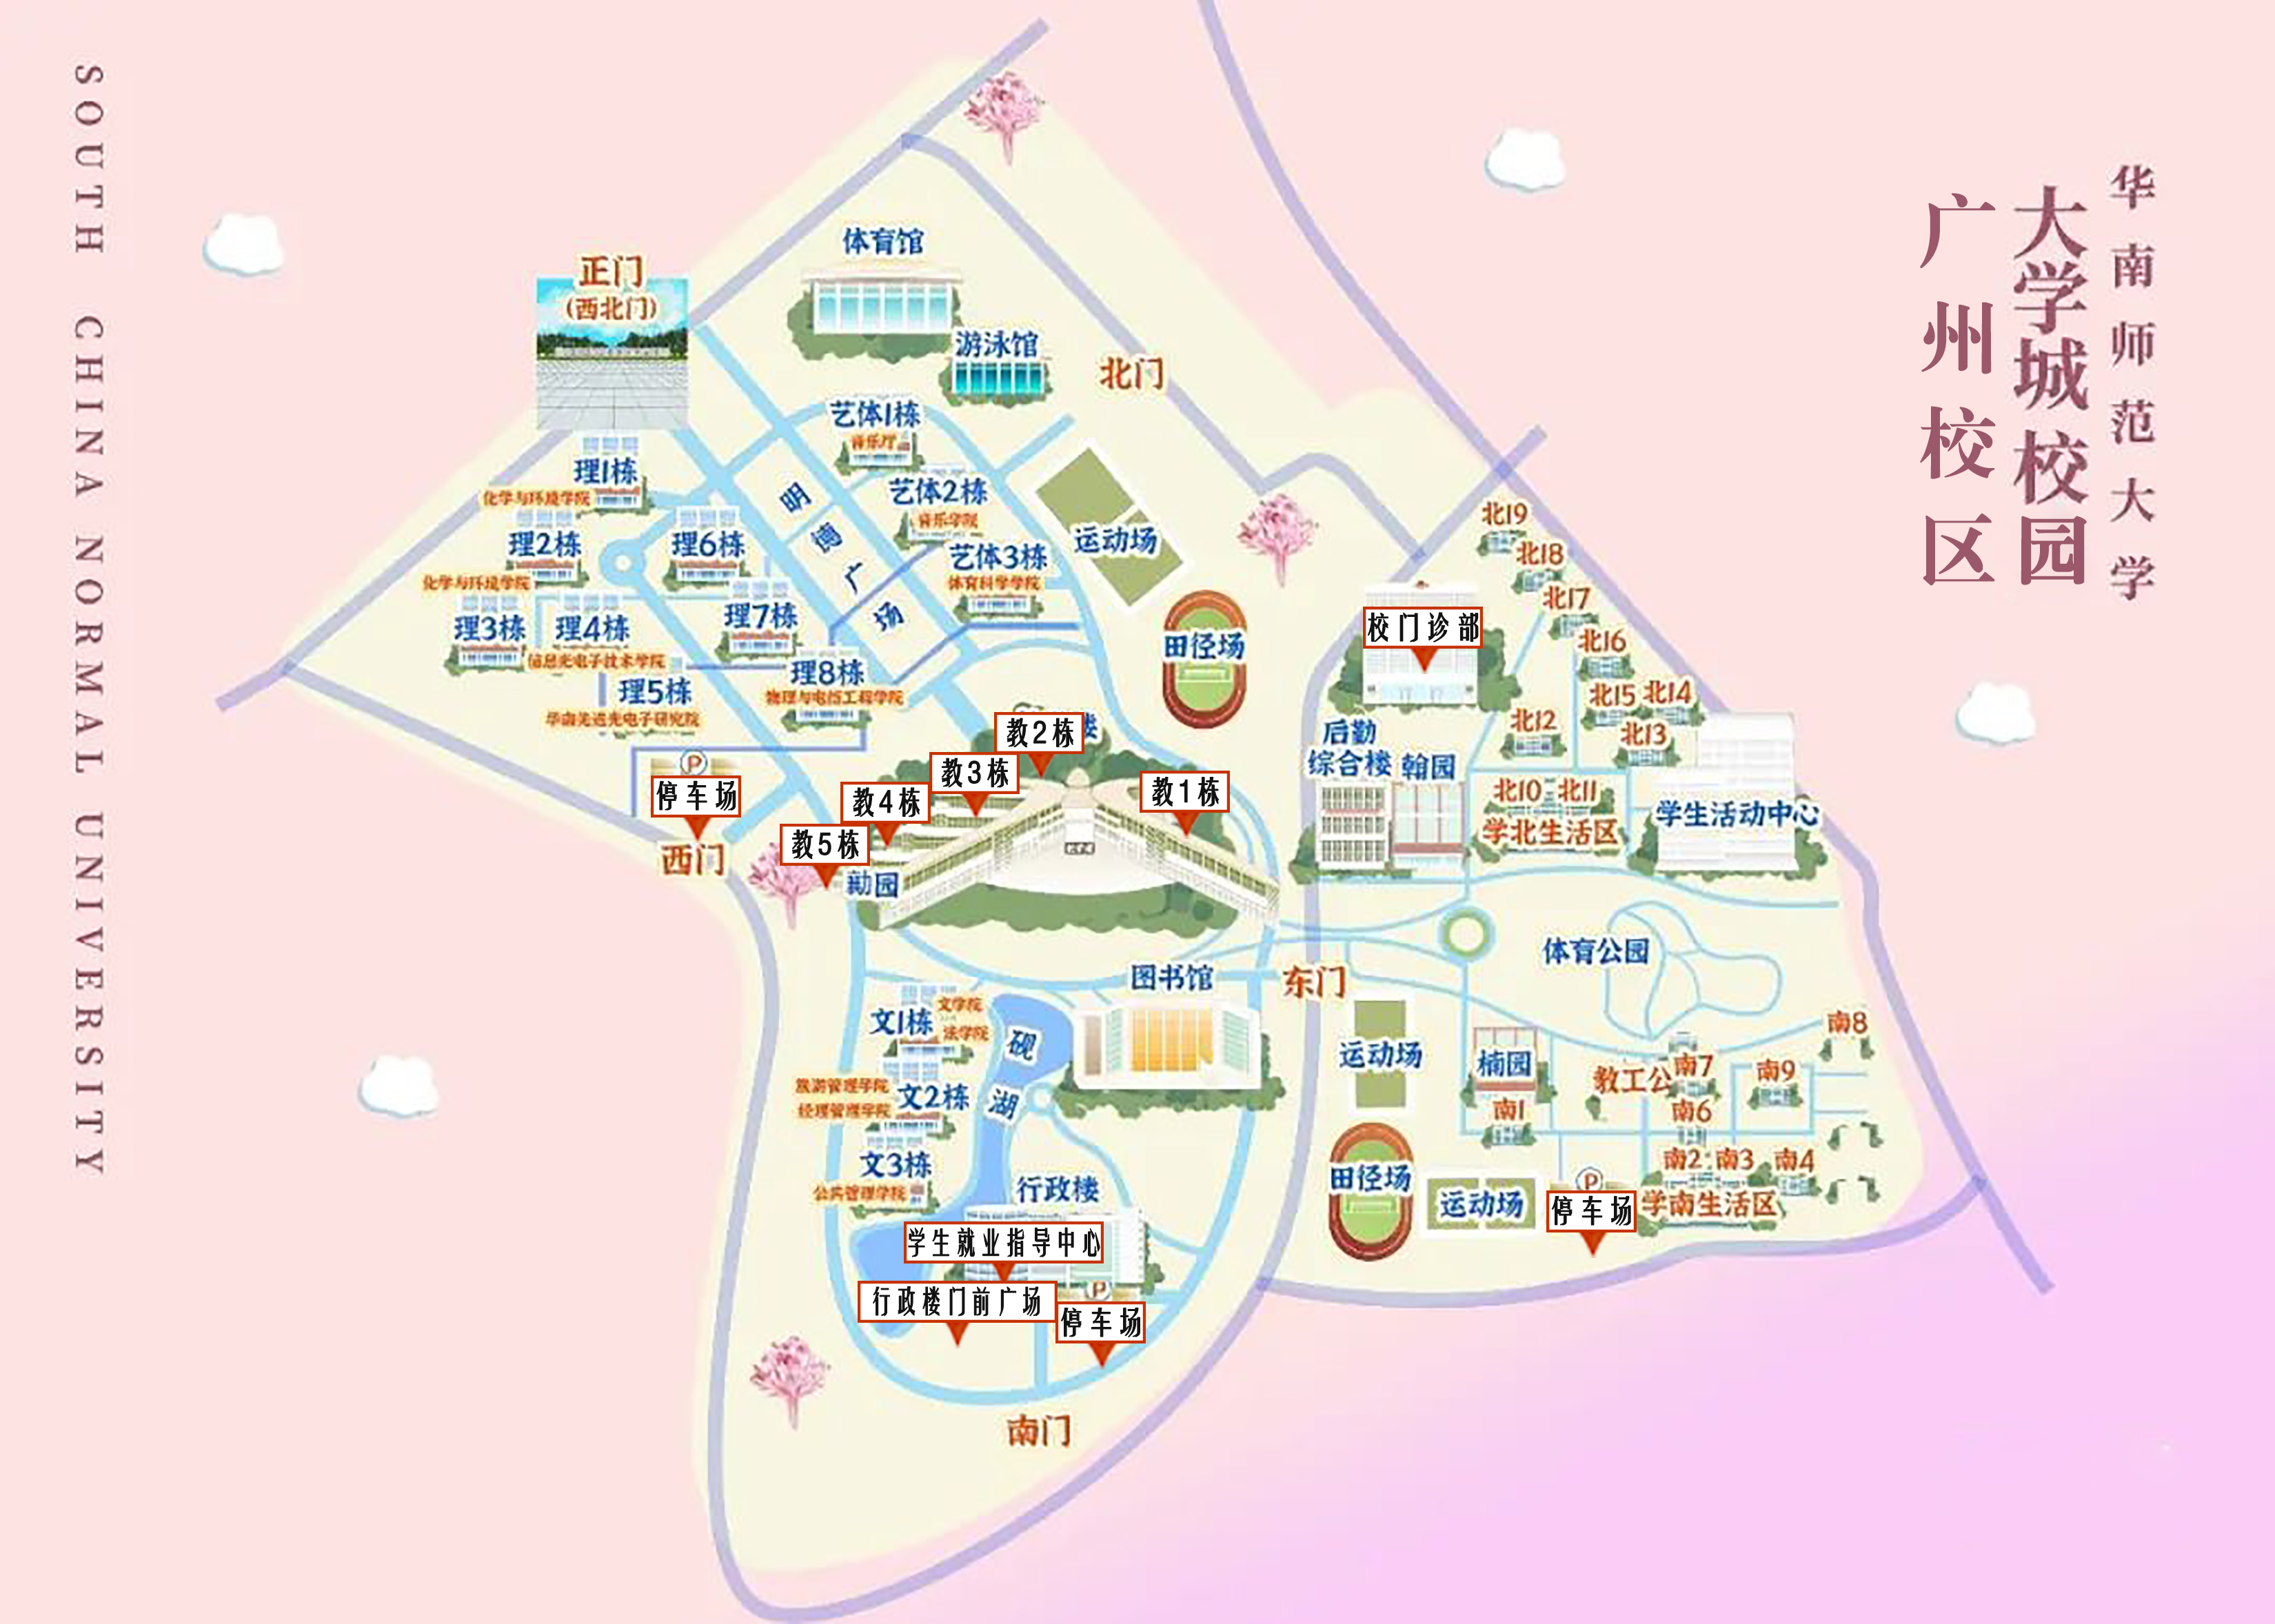 大学城校园地图.jpg